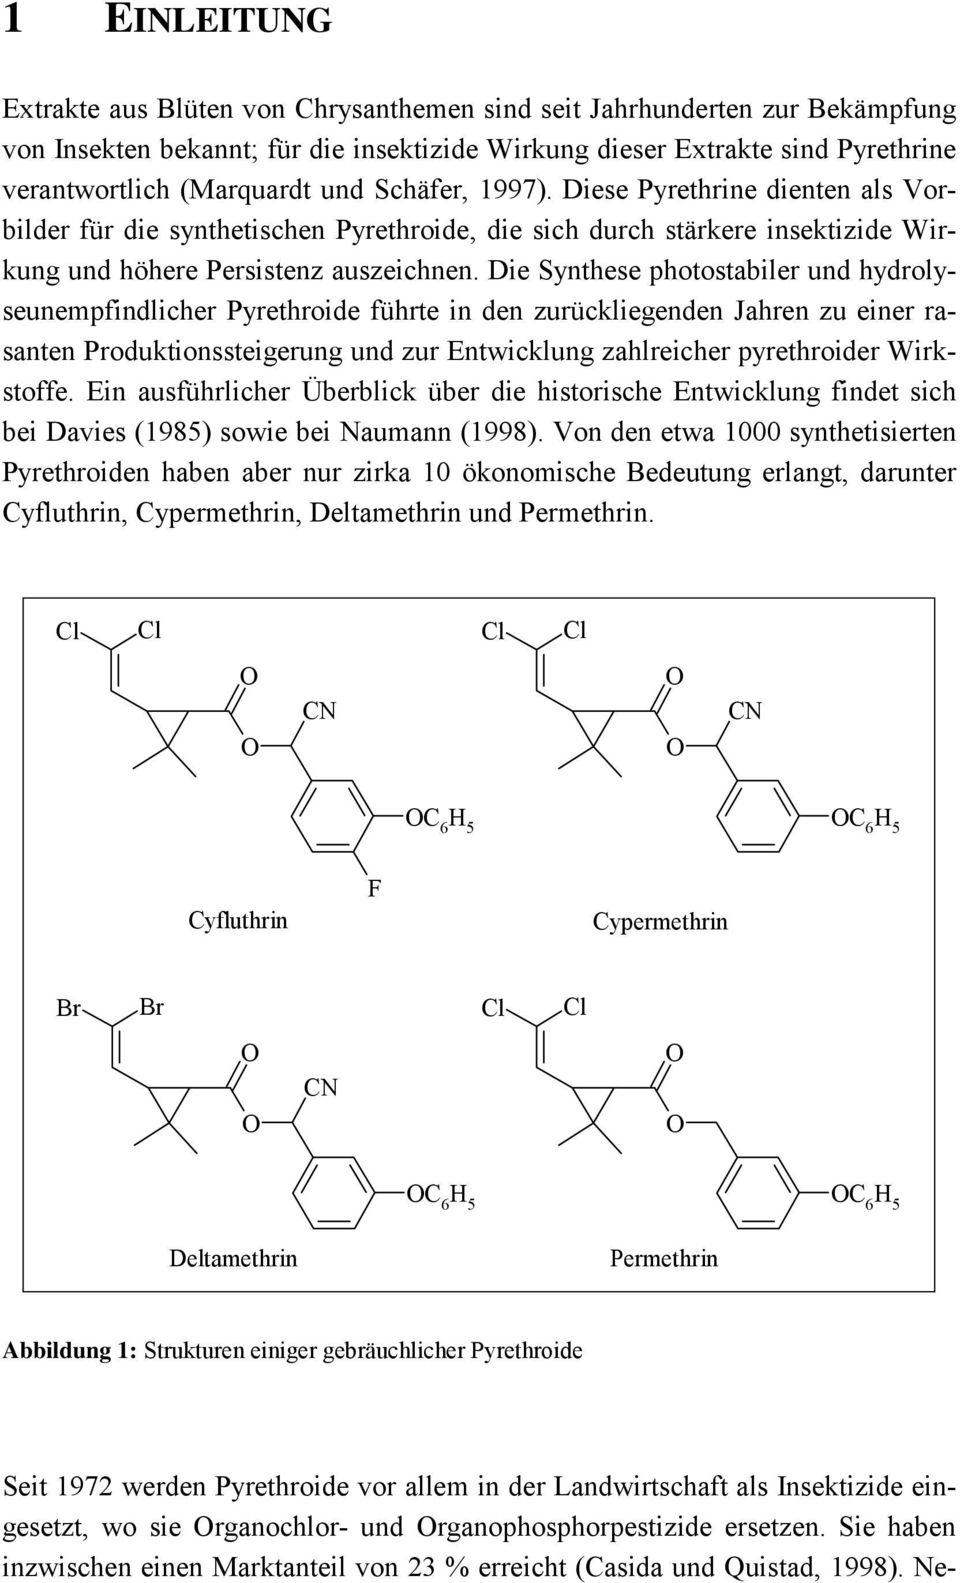 Die Synthese photostabiler und hydrolyseunempfindlicher Pyrethroide führte in den zurückliegenden Jahren zu einer rasanten Produktionssteigerung und zur Entwicklung zahlreicher pyrethroider